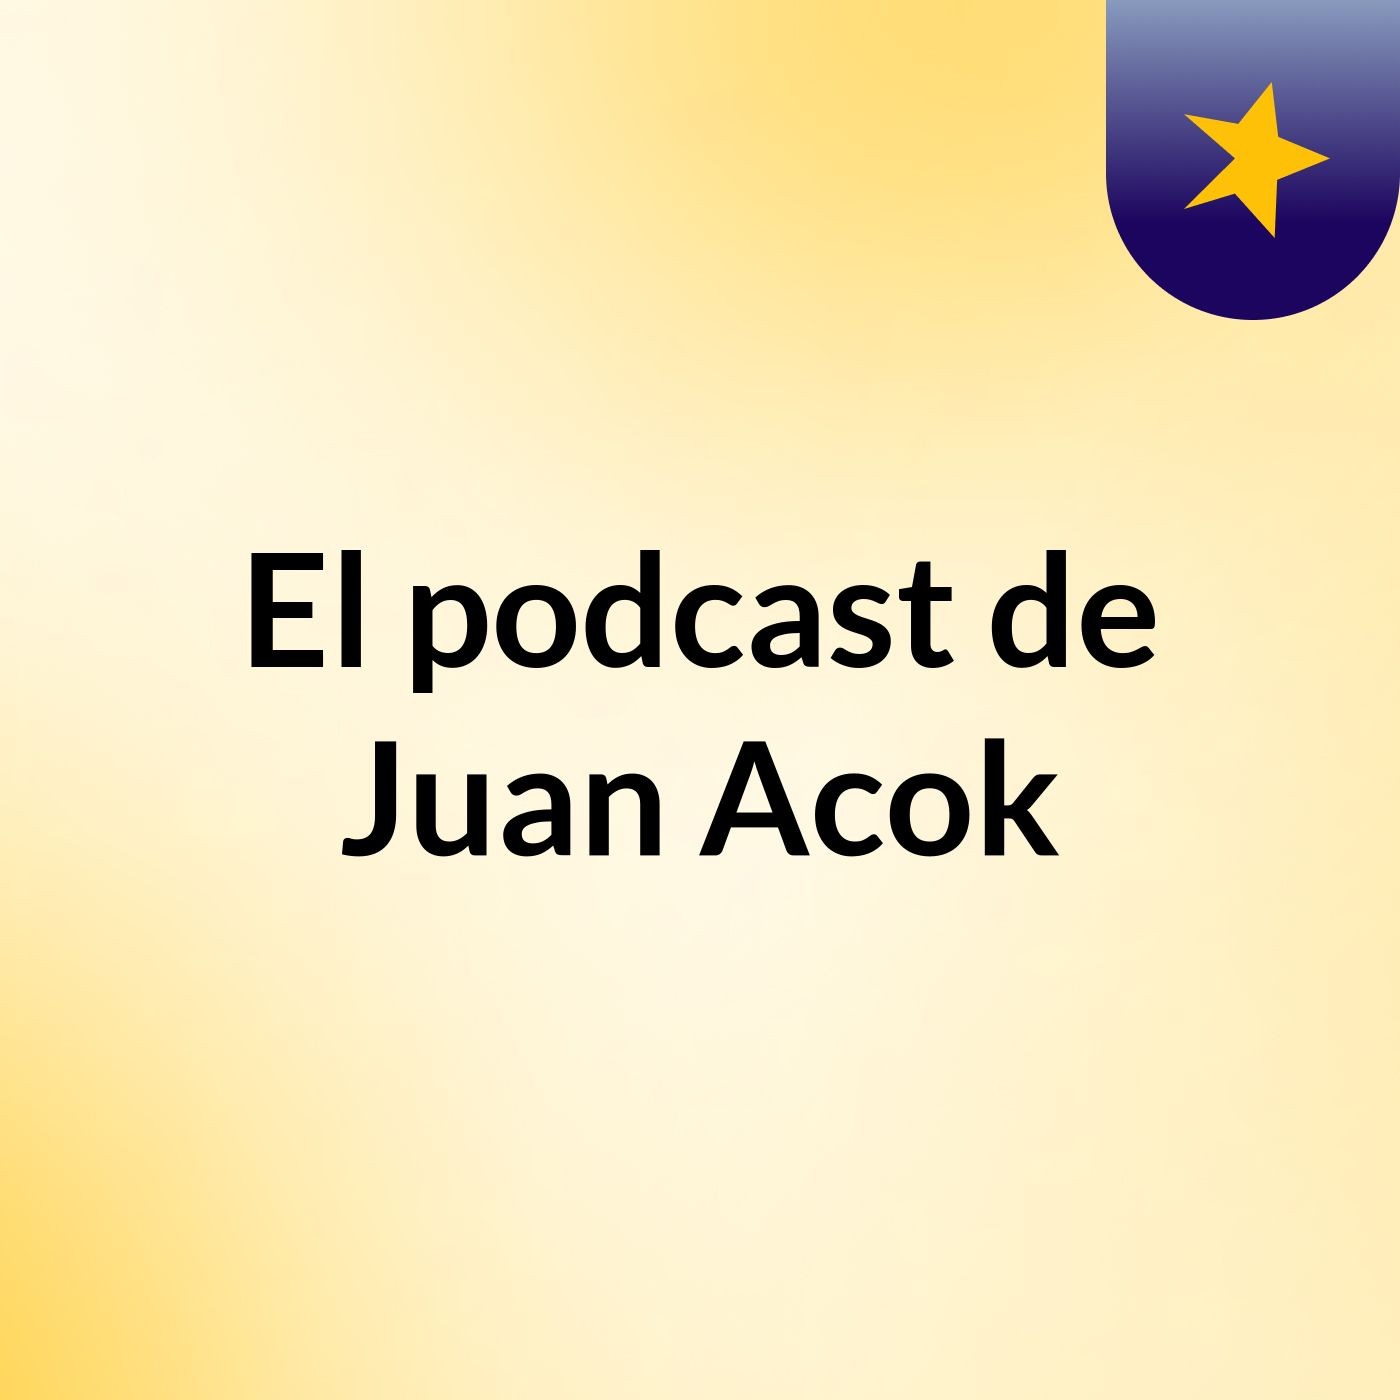 El podcast de Juan Acok